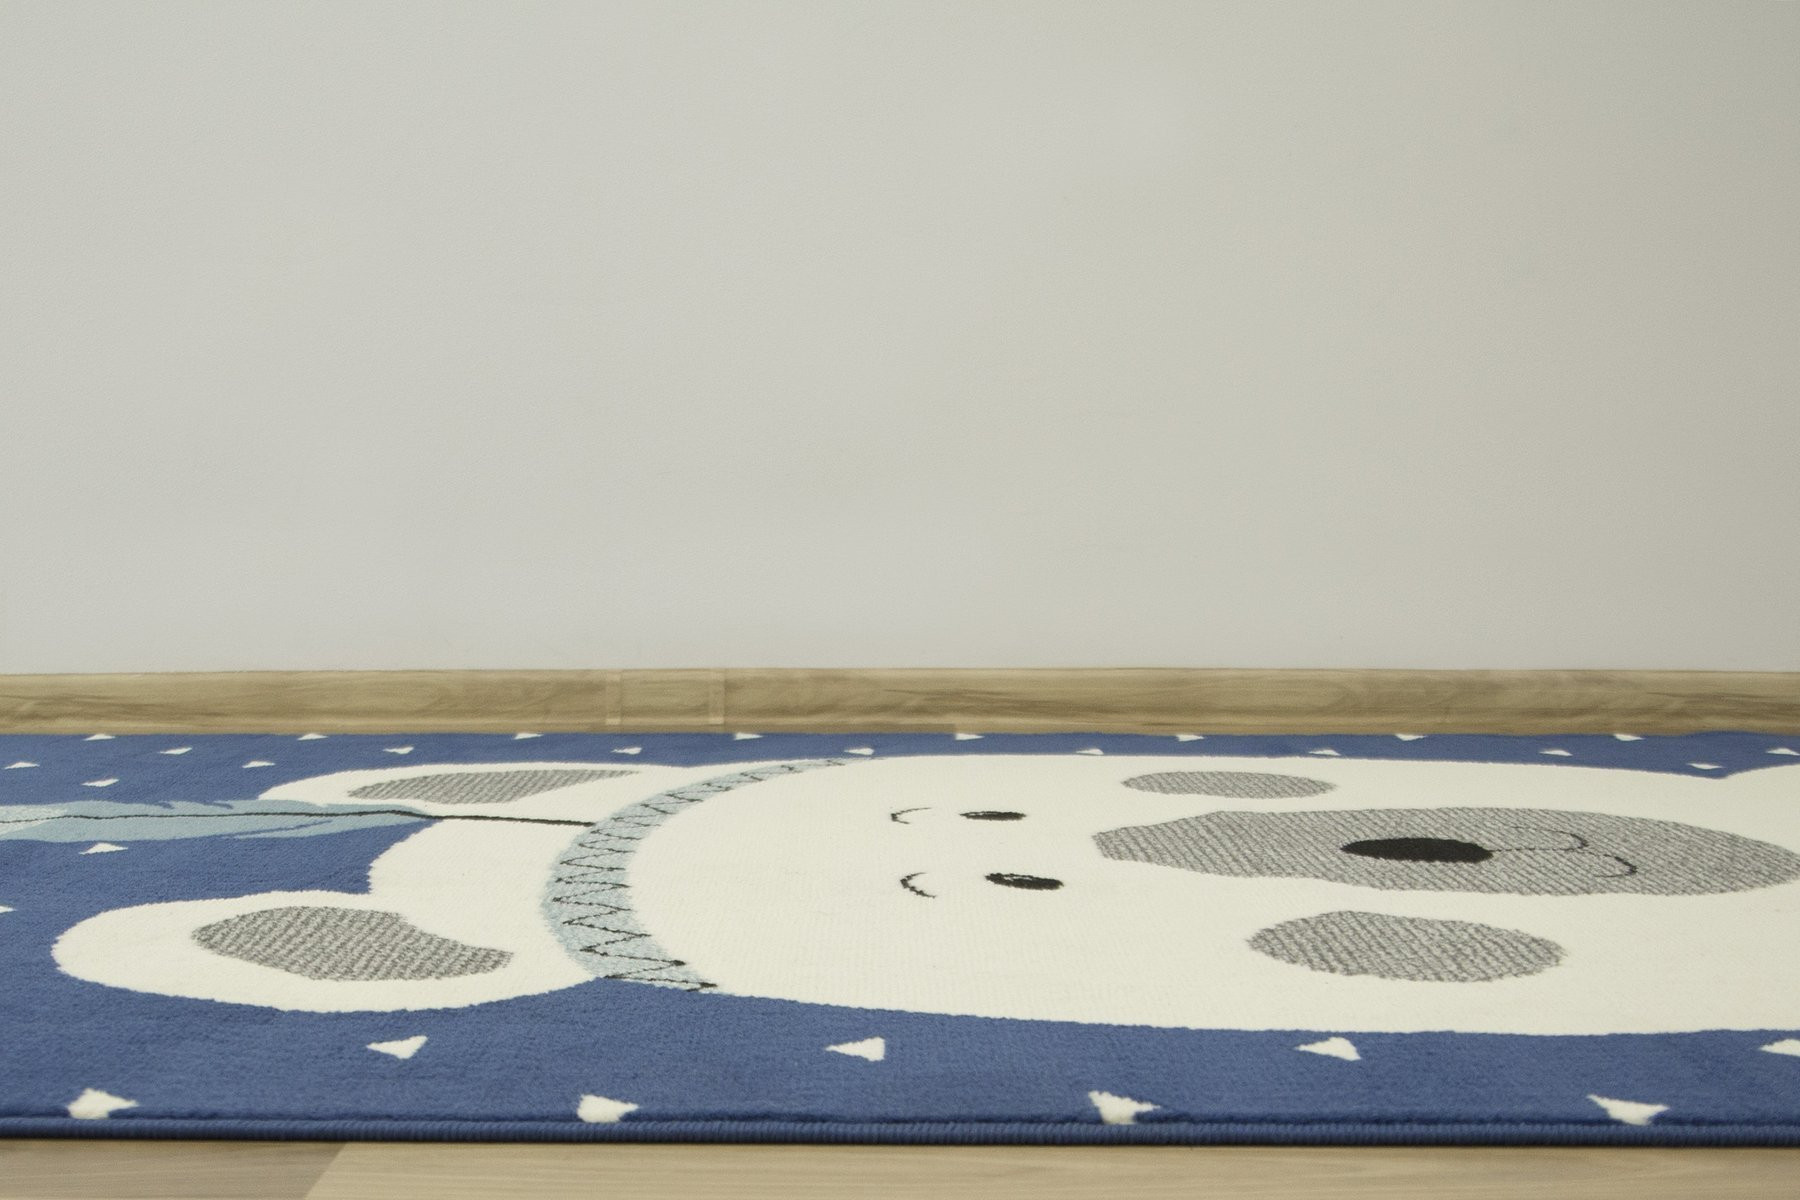 Dětský koberec Luna Kids 534222/94955 - Medvídek indián, modrý